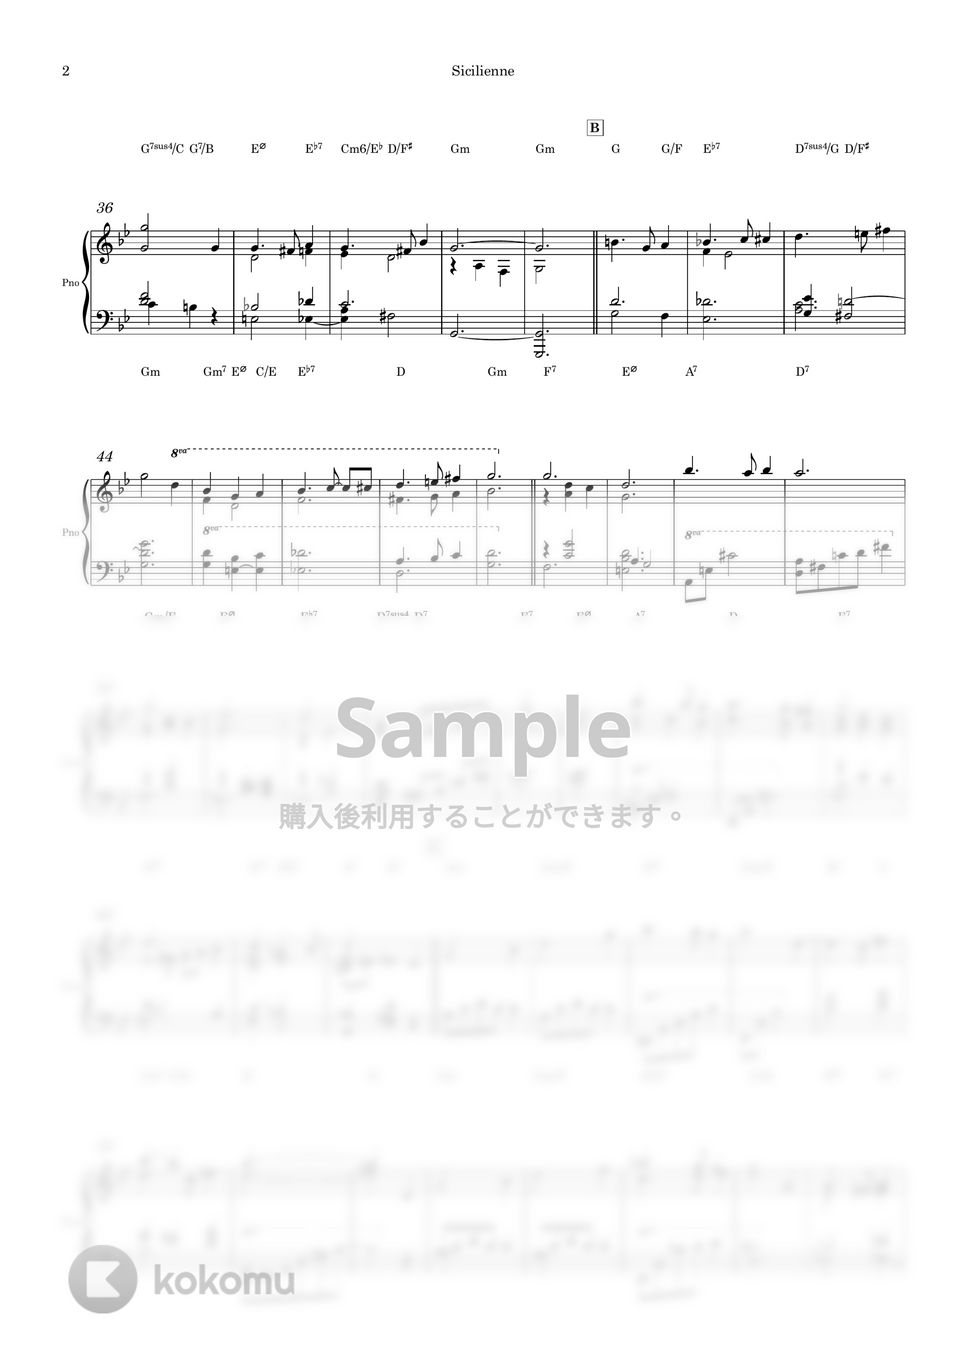 ガブリエル·フォーレ - シシリアンヌ (ピアノソロのための楽譜) by Piano QQQ